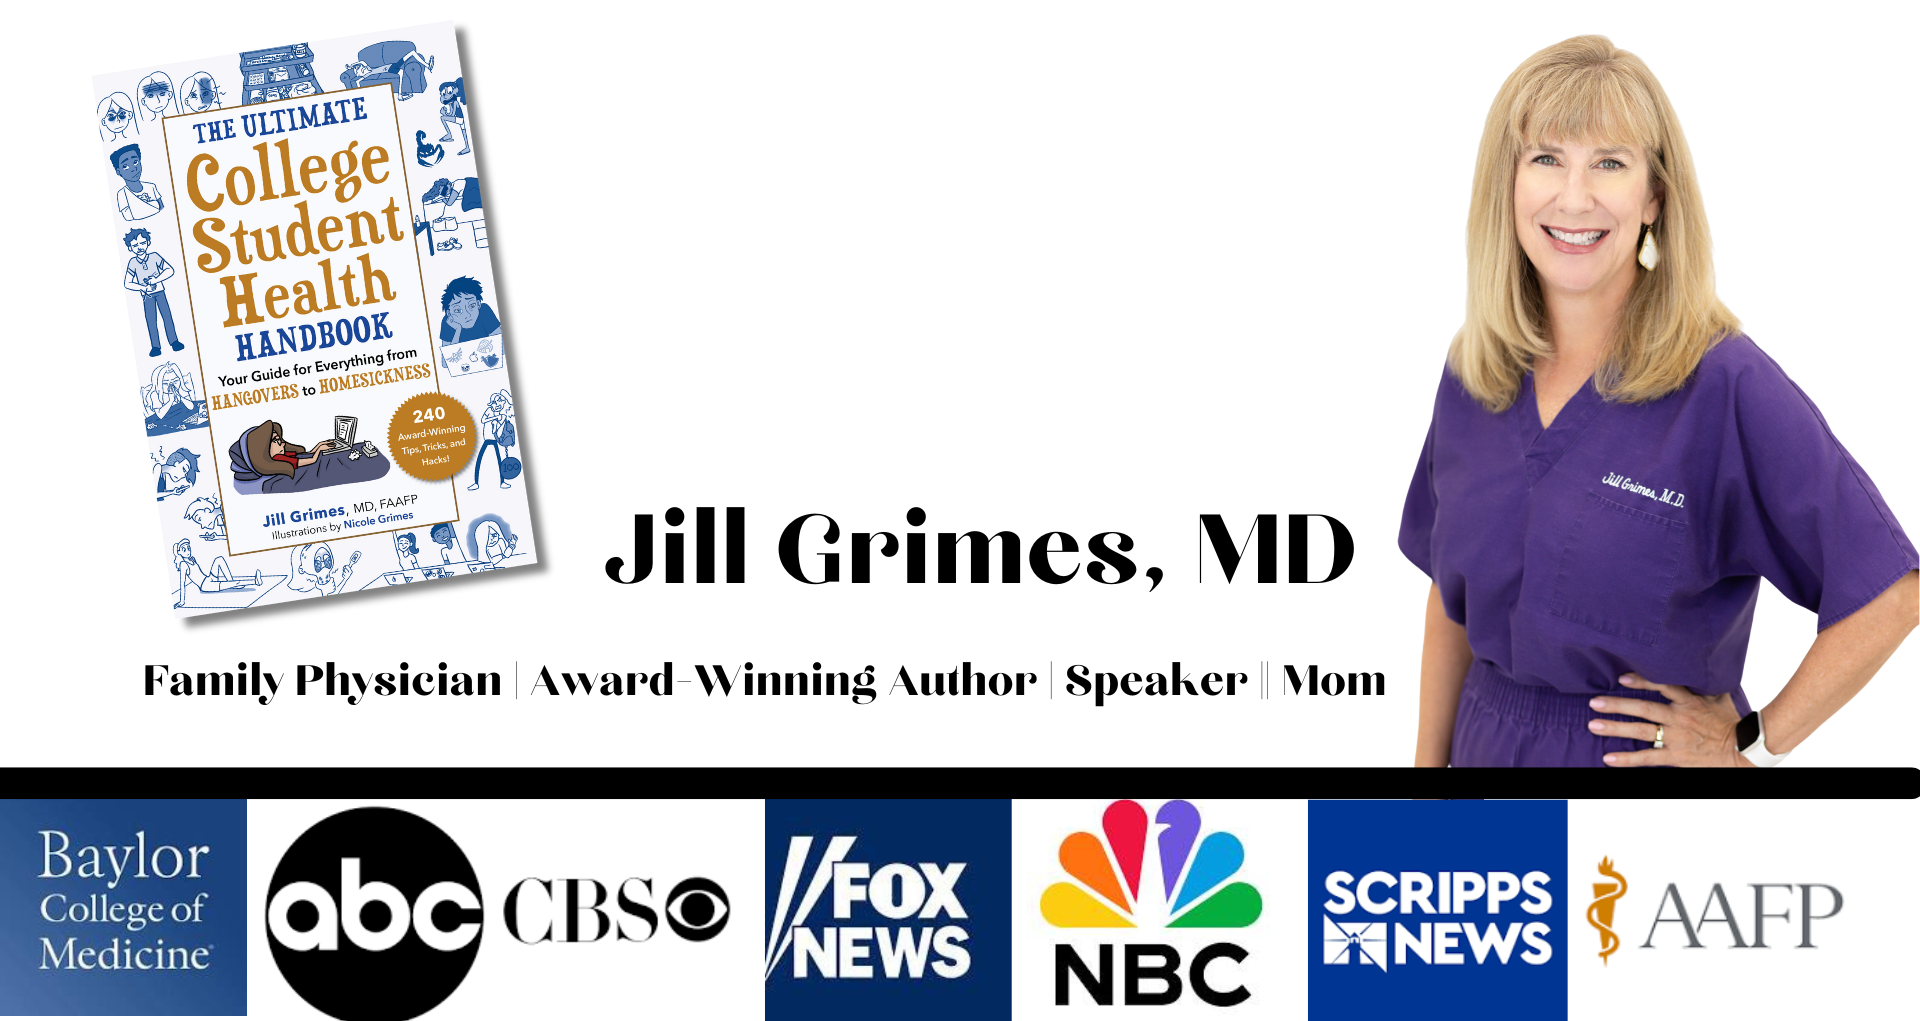 Dr. Jill Grimes